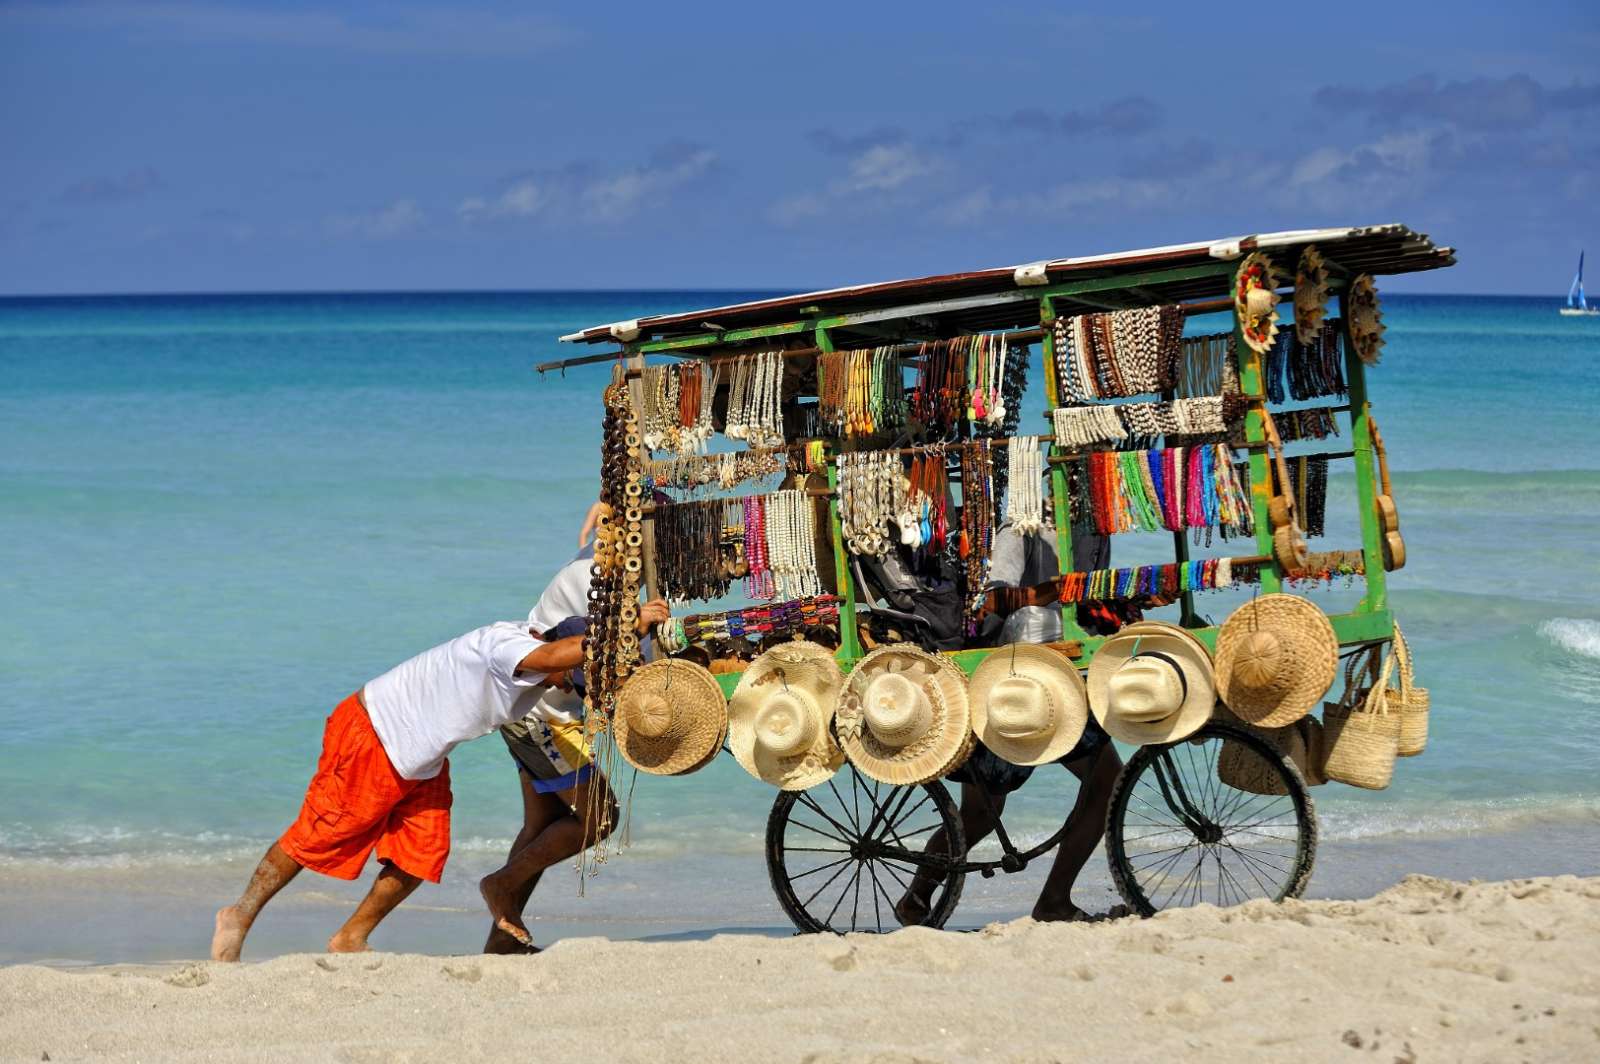 Beach vendor in Varadero, Cuba